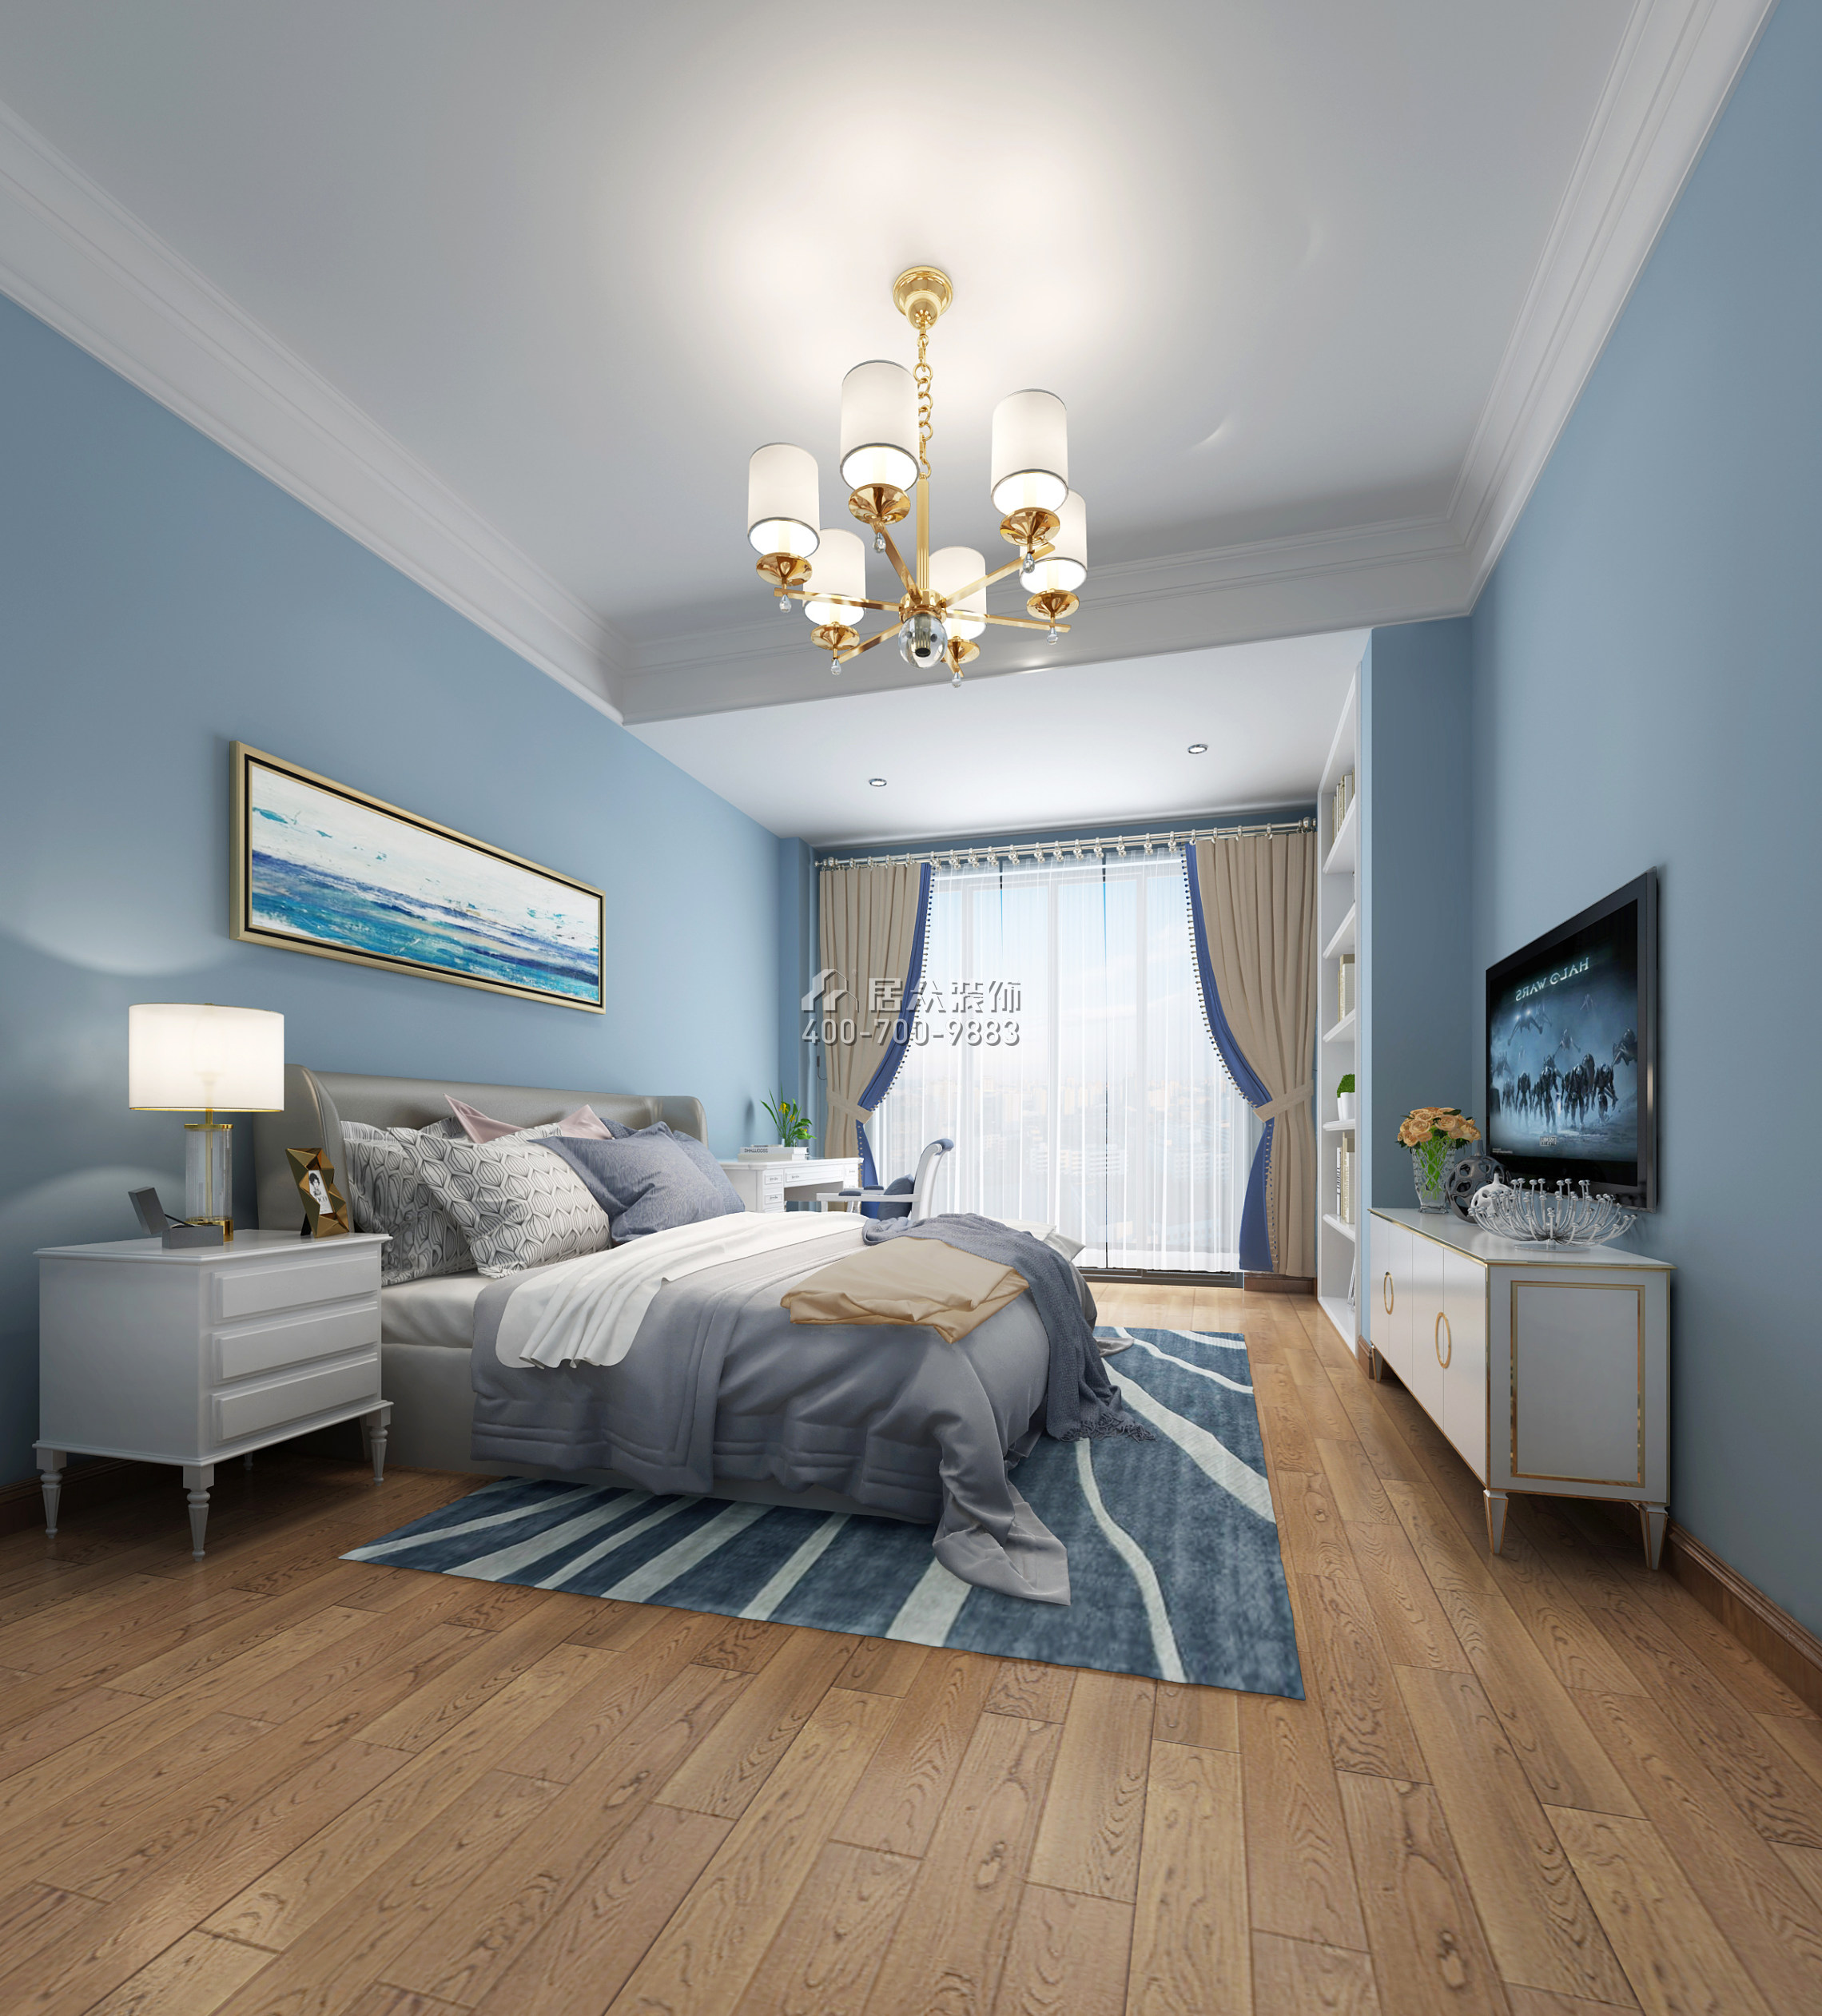 华策岭峰国际168平方米欧式风格别墅户型卧室装修效果图